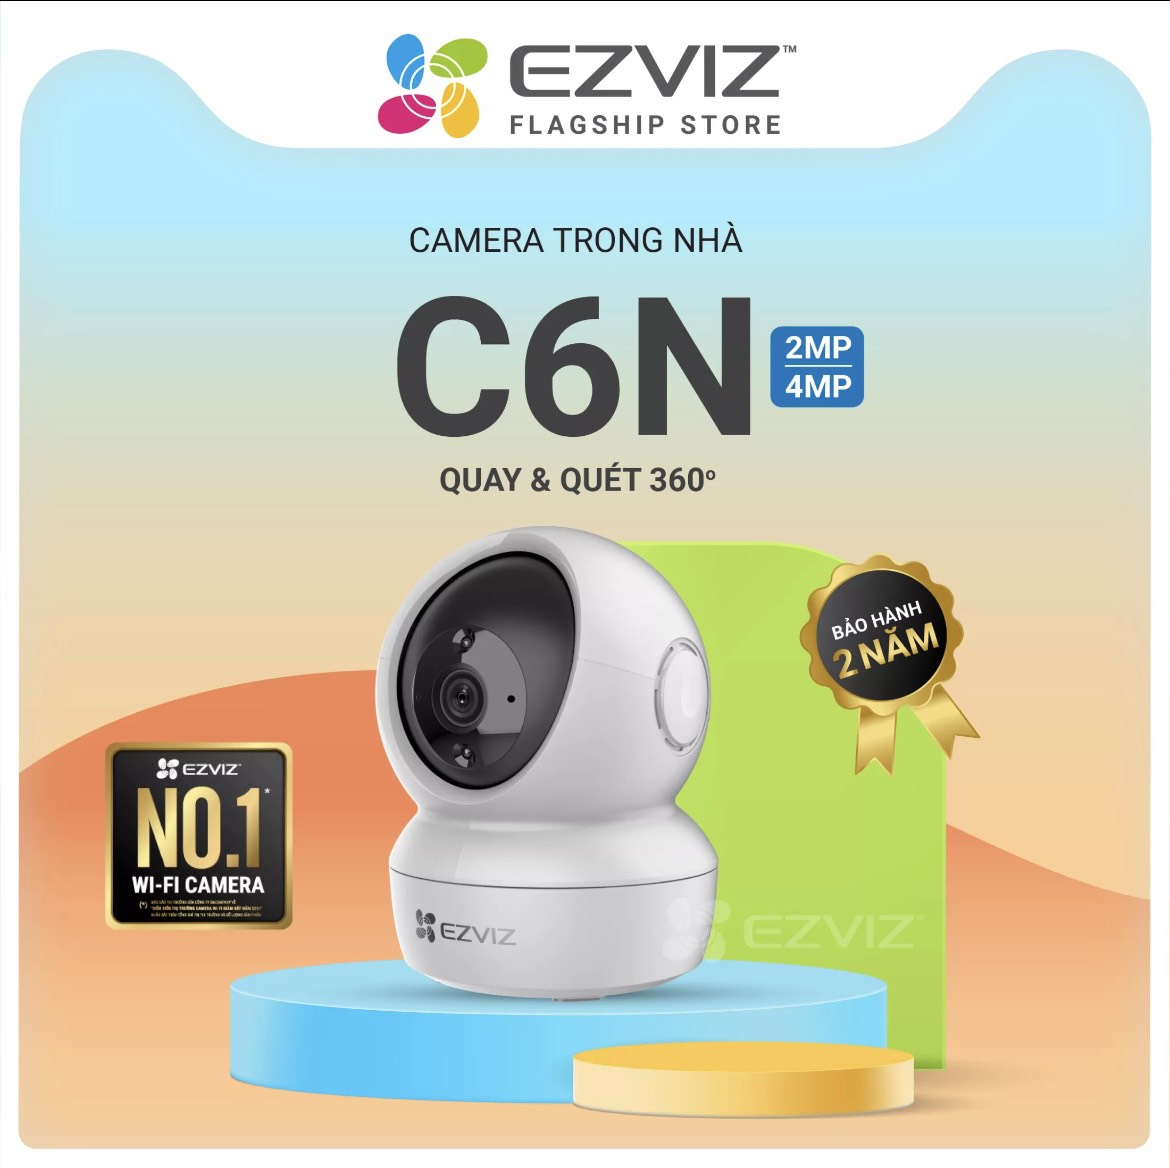 Camera EZVIZ C6N 1080P CHÍNH HÃNG BH24 tháng trong nhà Wireless không dây hồng ngoại